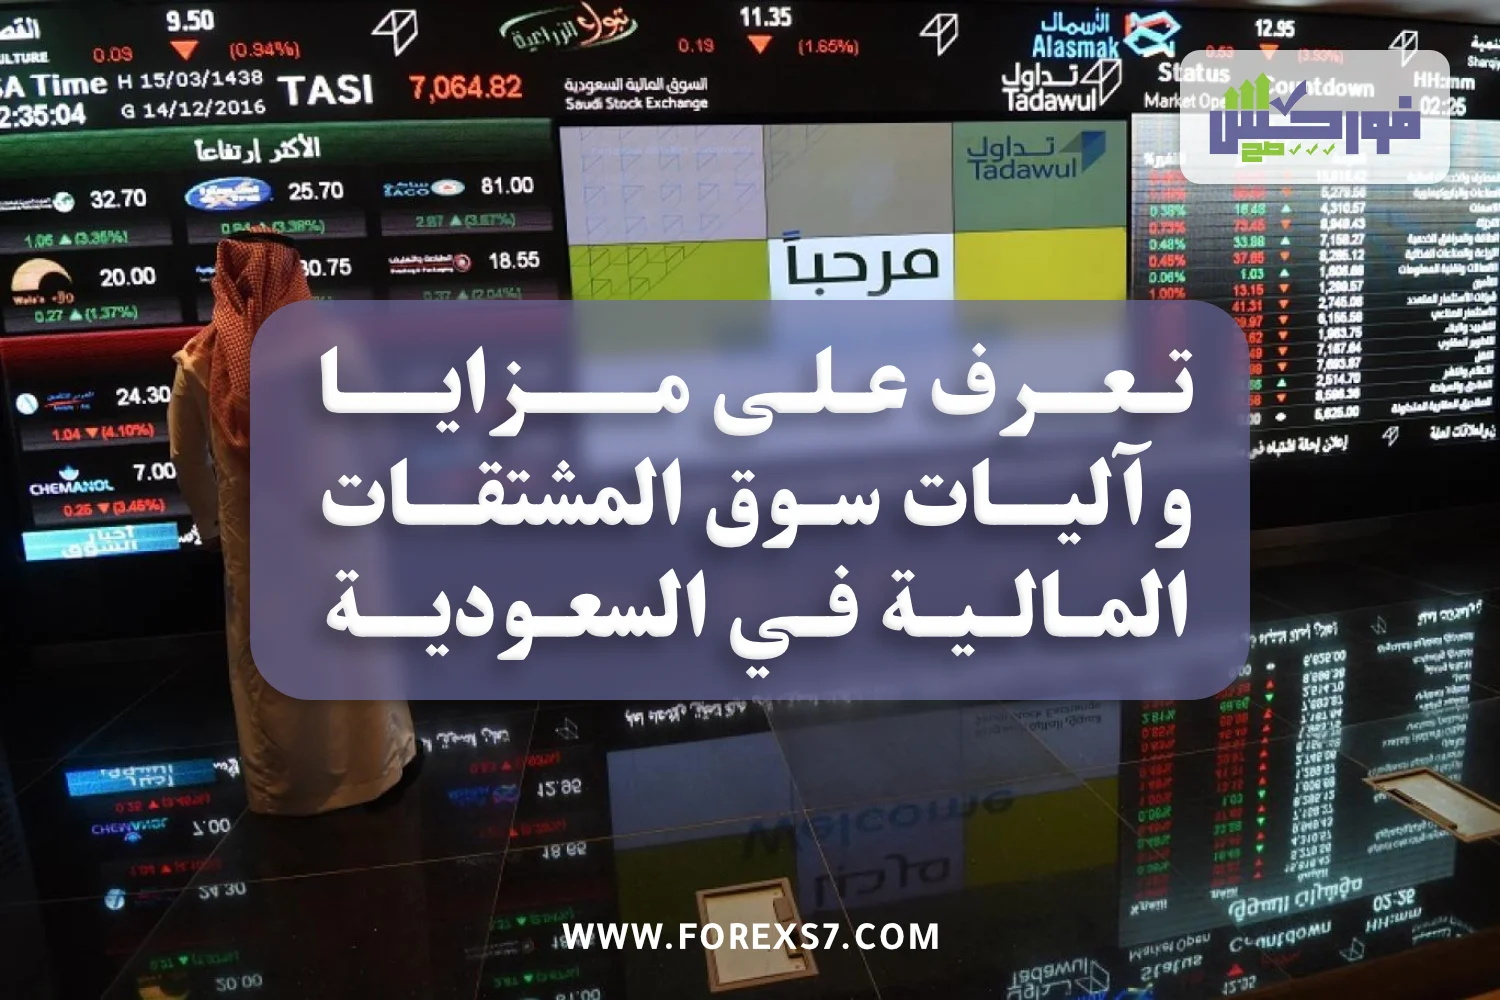 تعرف على مزايا وآليات سوق المشتقات المالية في السعودية